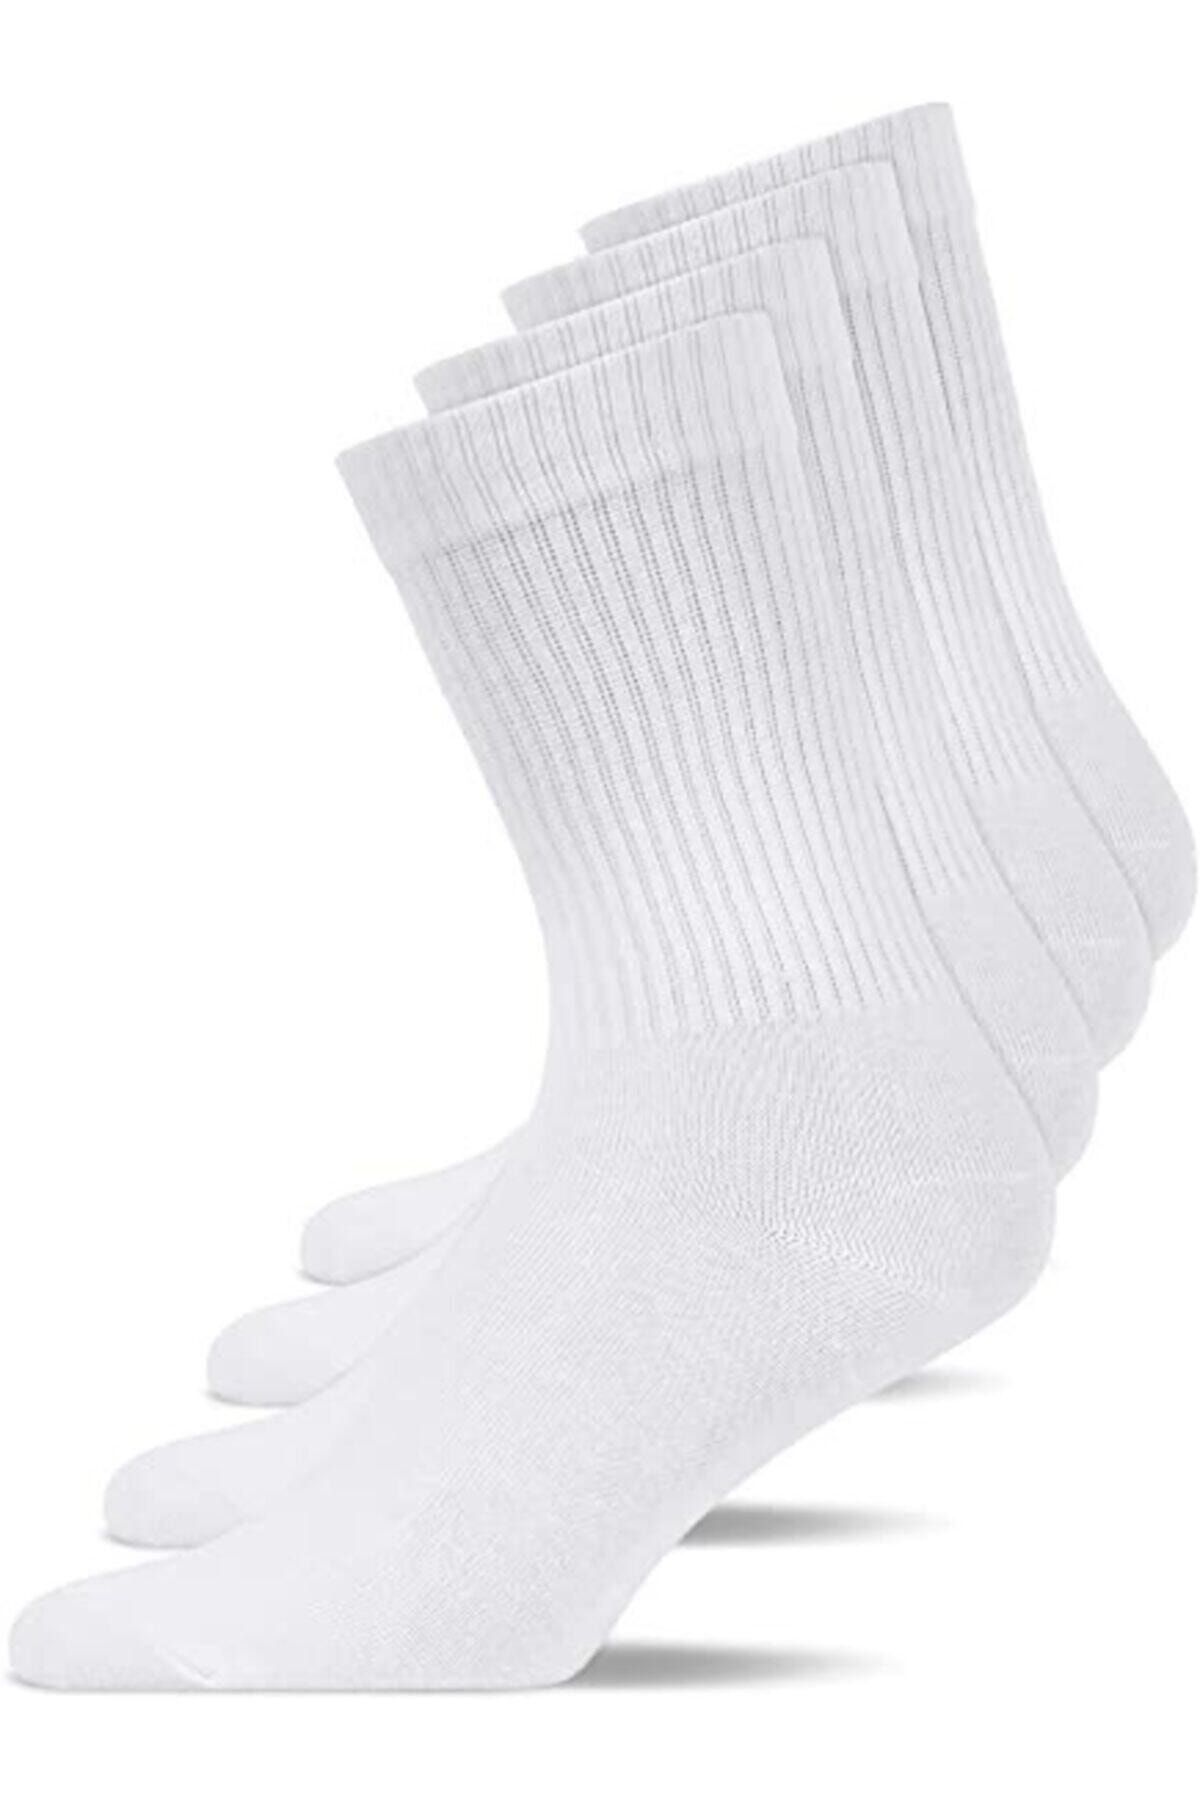 Socks Story Antreman Çorabı Fitilli Beyaz Unisex Kadın Erkek Düz Soket Tenis Çorap Ekonomik Paket 3 Adet